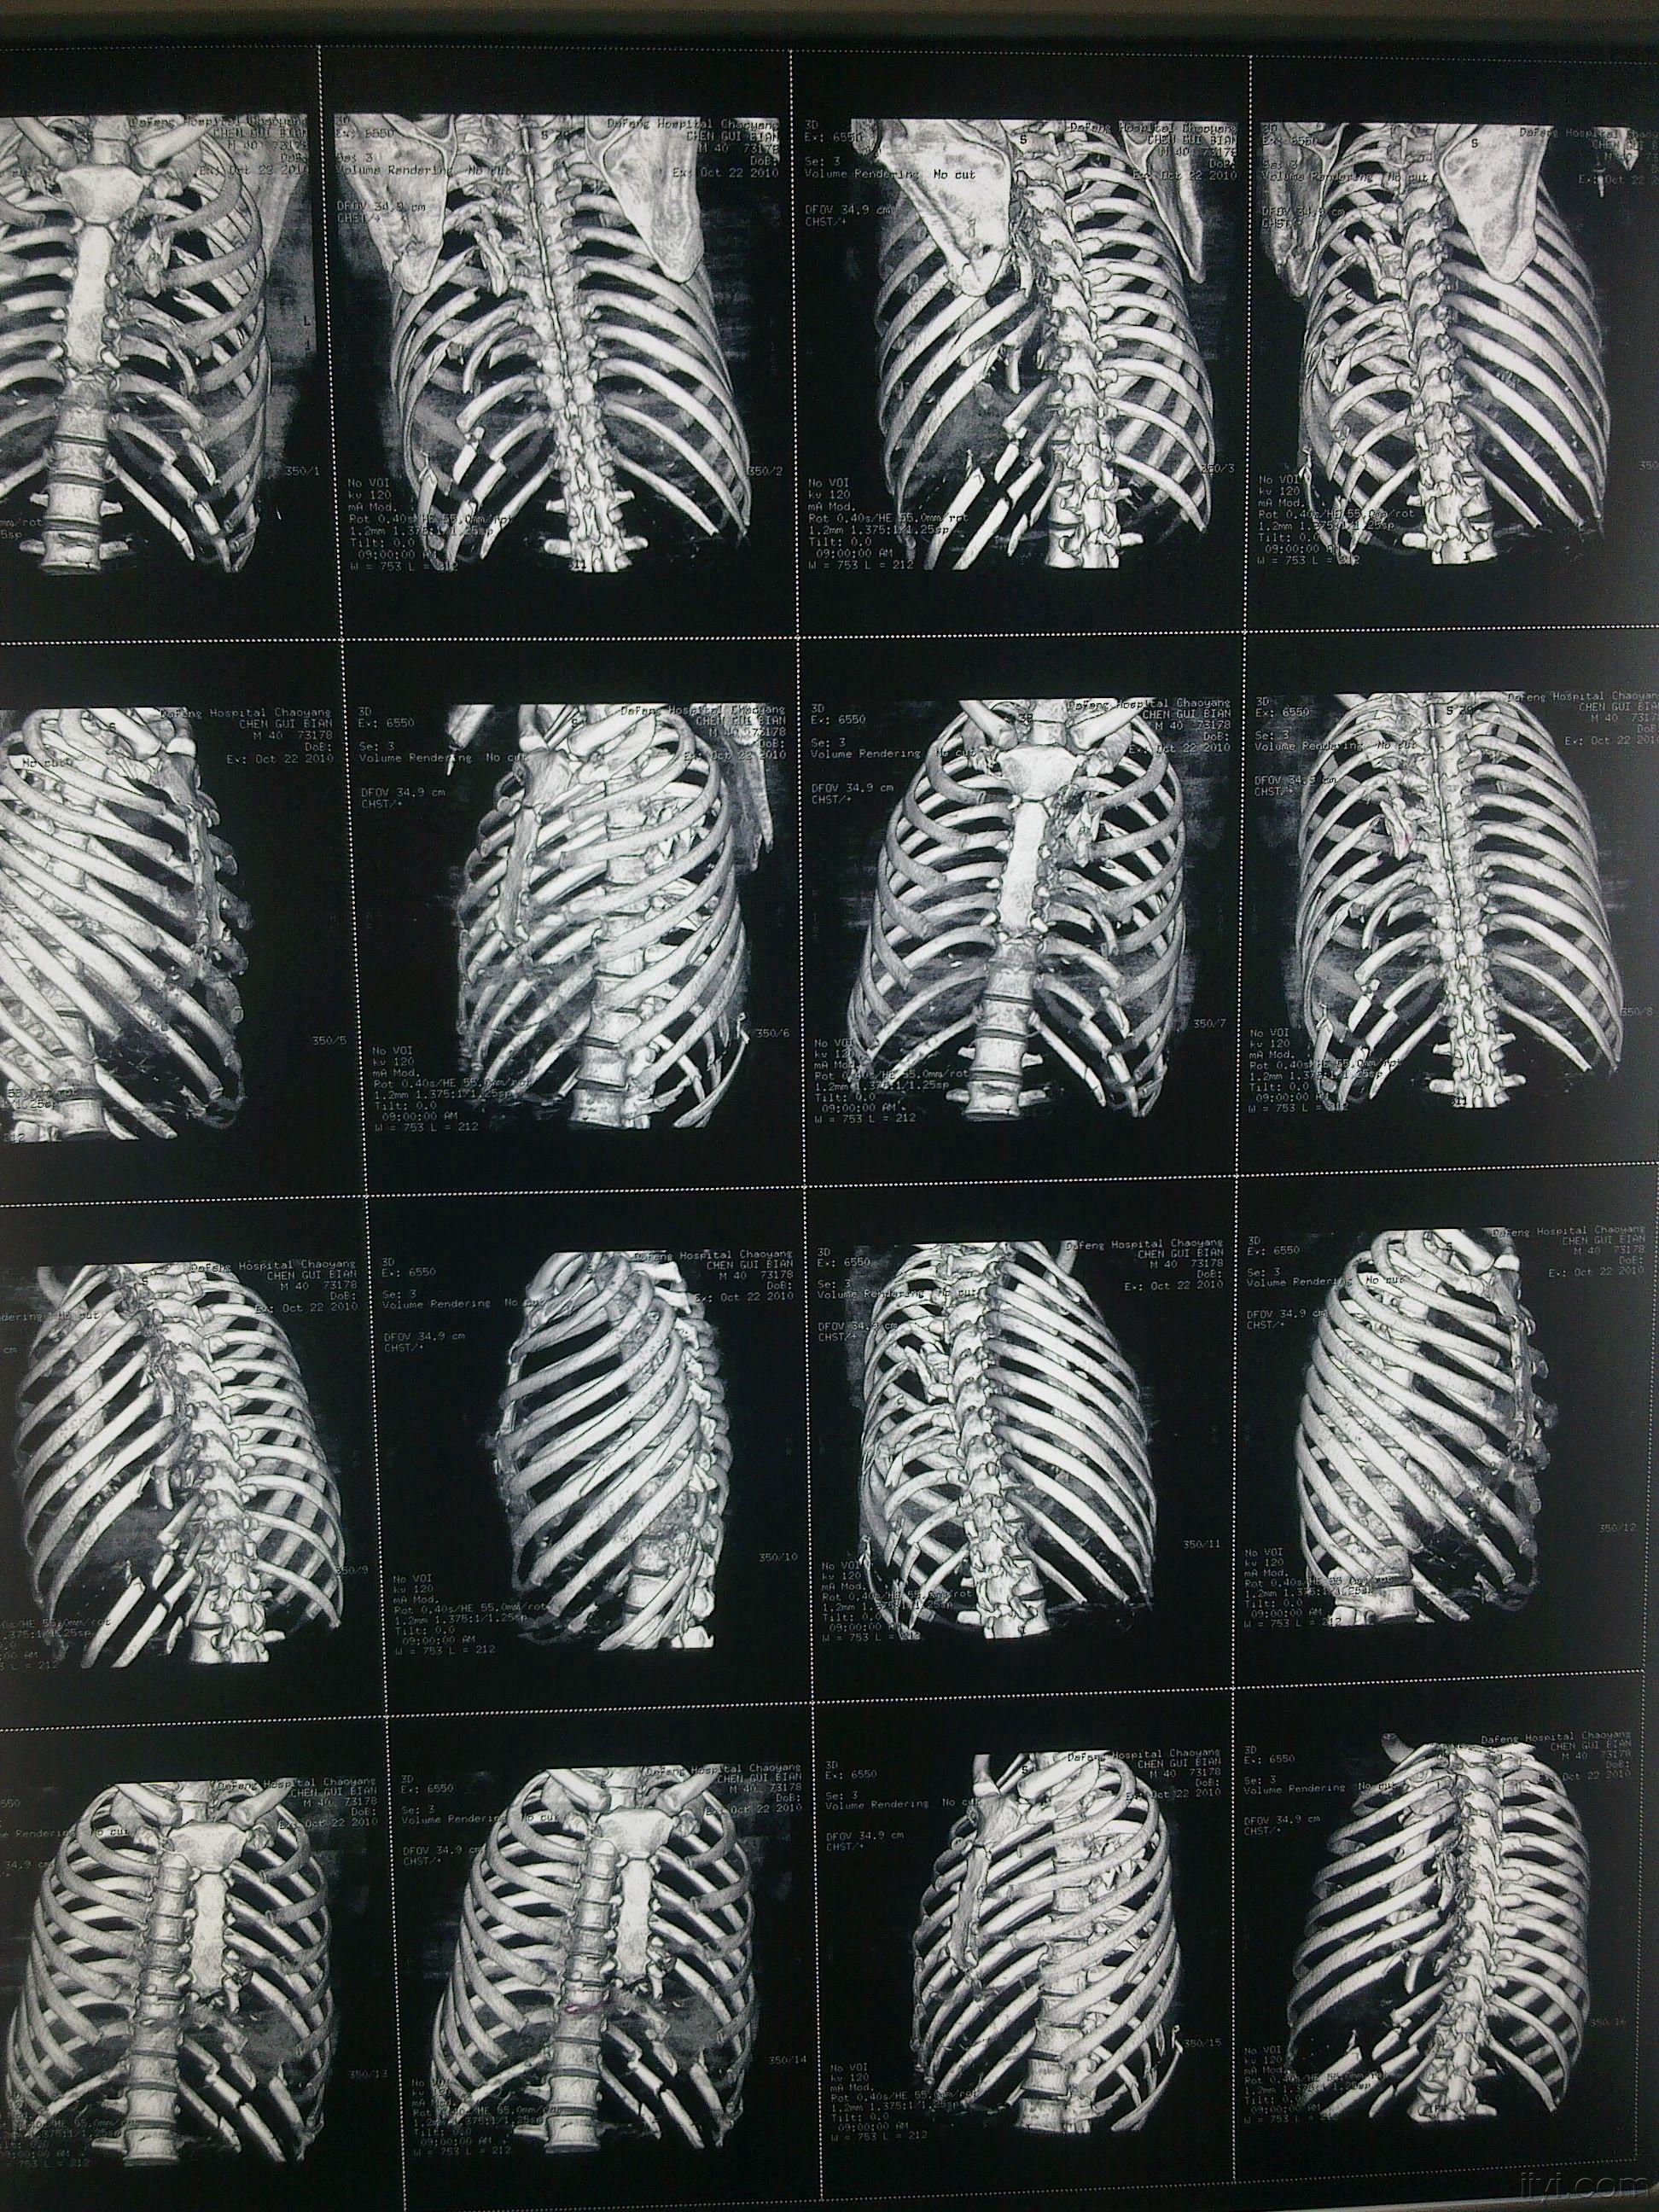 多发性肋骨骨折创伤性湿肺术后肺积血治疗讨论付经典肋骨重建图片